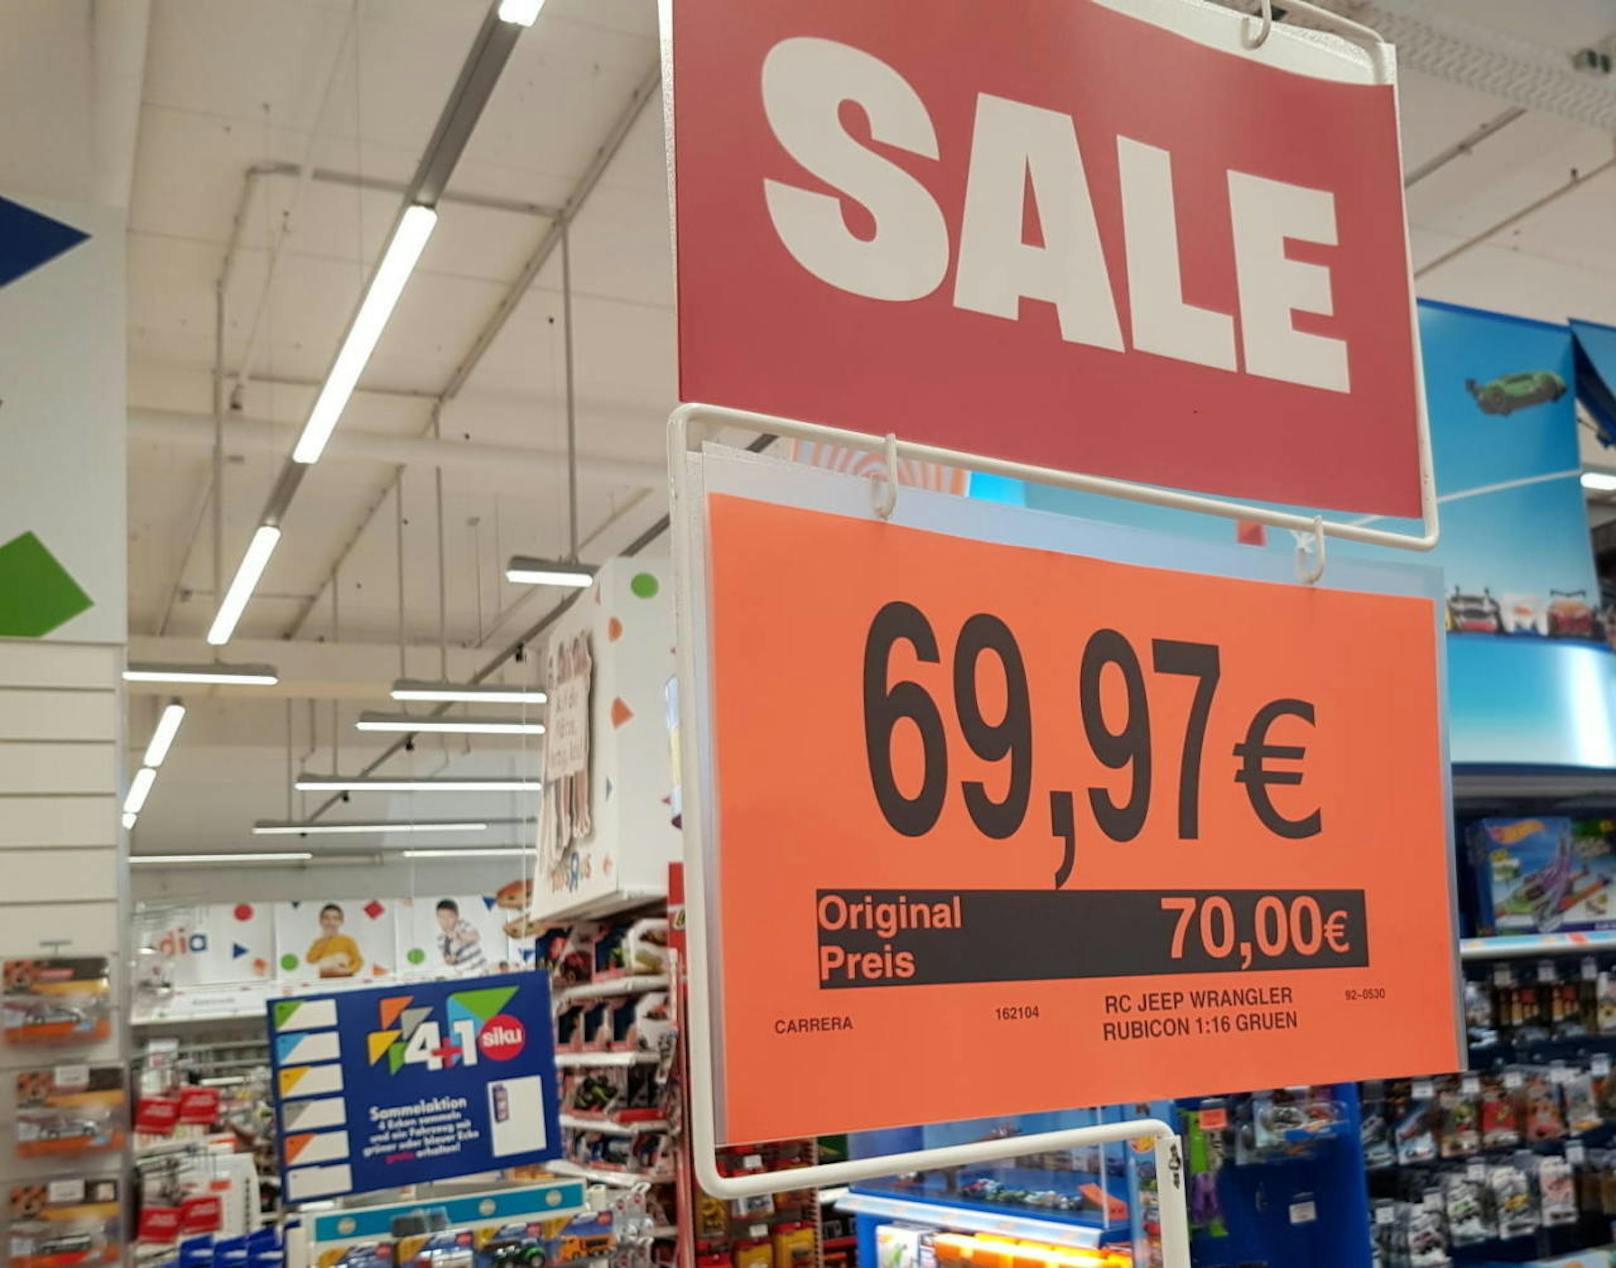 "Neulich beim Einkaufen entdeckt...Eine Kundenverarsche??", schreibt "Heute"-Leser Tomasz P. In einem Spielzeuggeschäft in Niederösterreich entdeckte er dieses vermeintliche Schnäppchen, das keines ist.

Statt 70 Euro kostet der Spielzeug-Jeep "nur noch" 69,97 Euro. #Preisfail